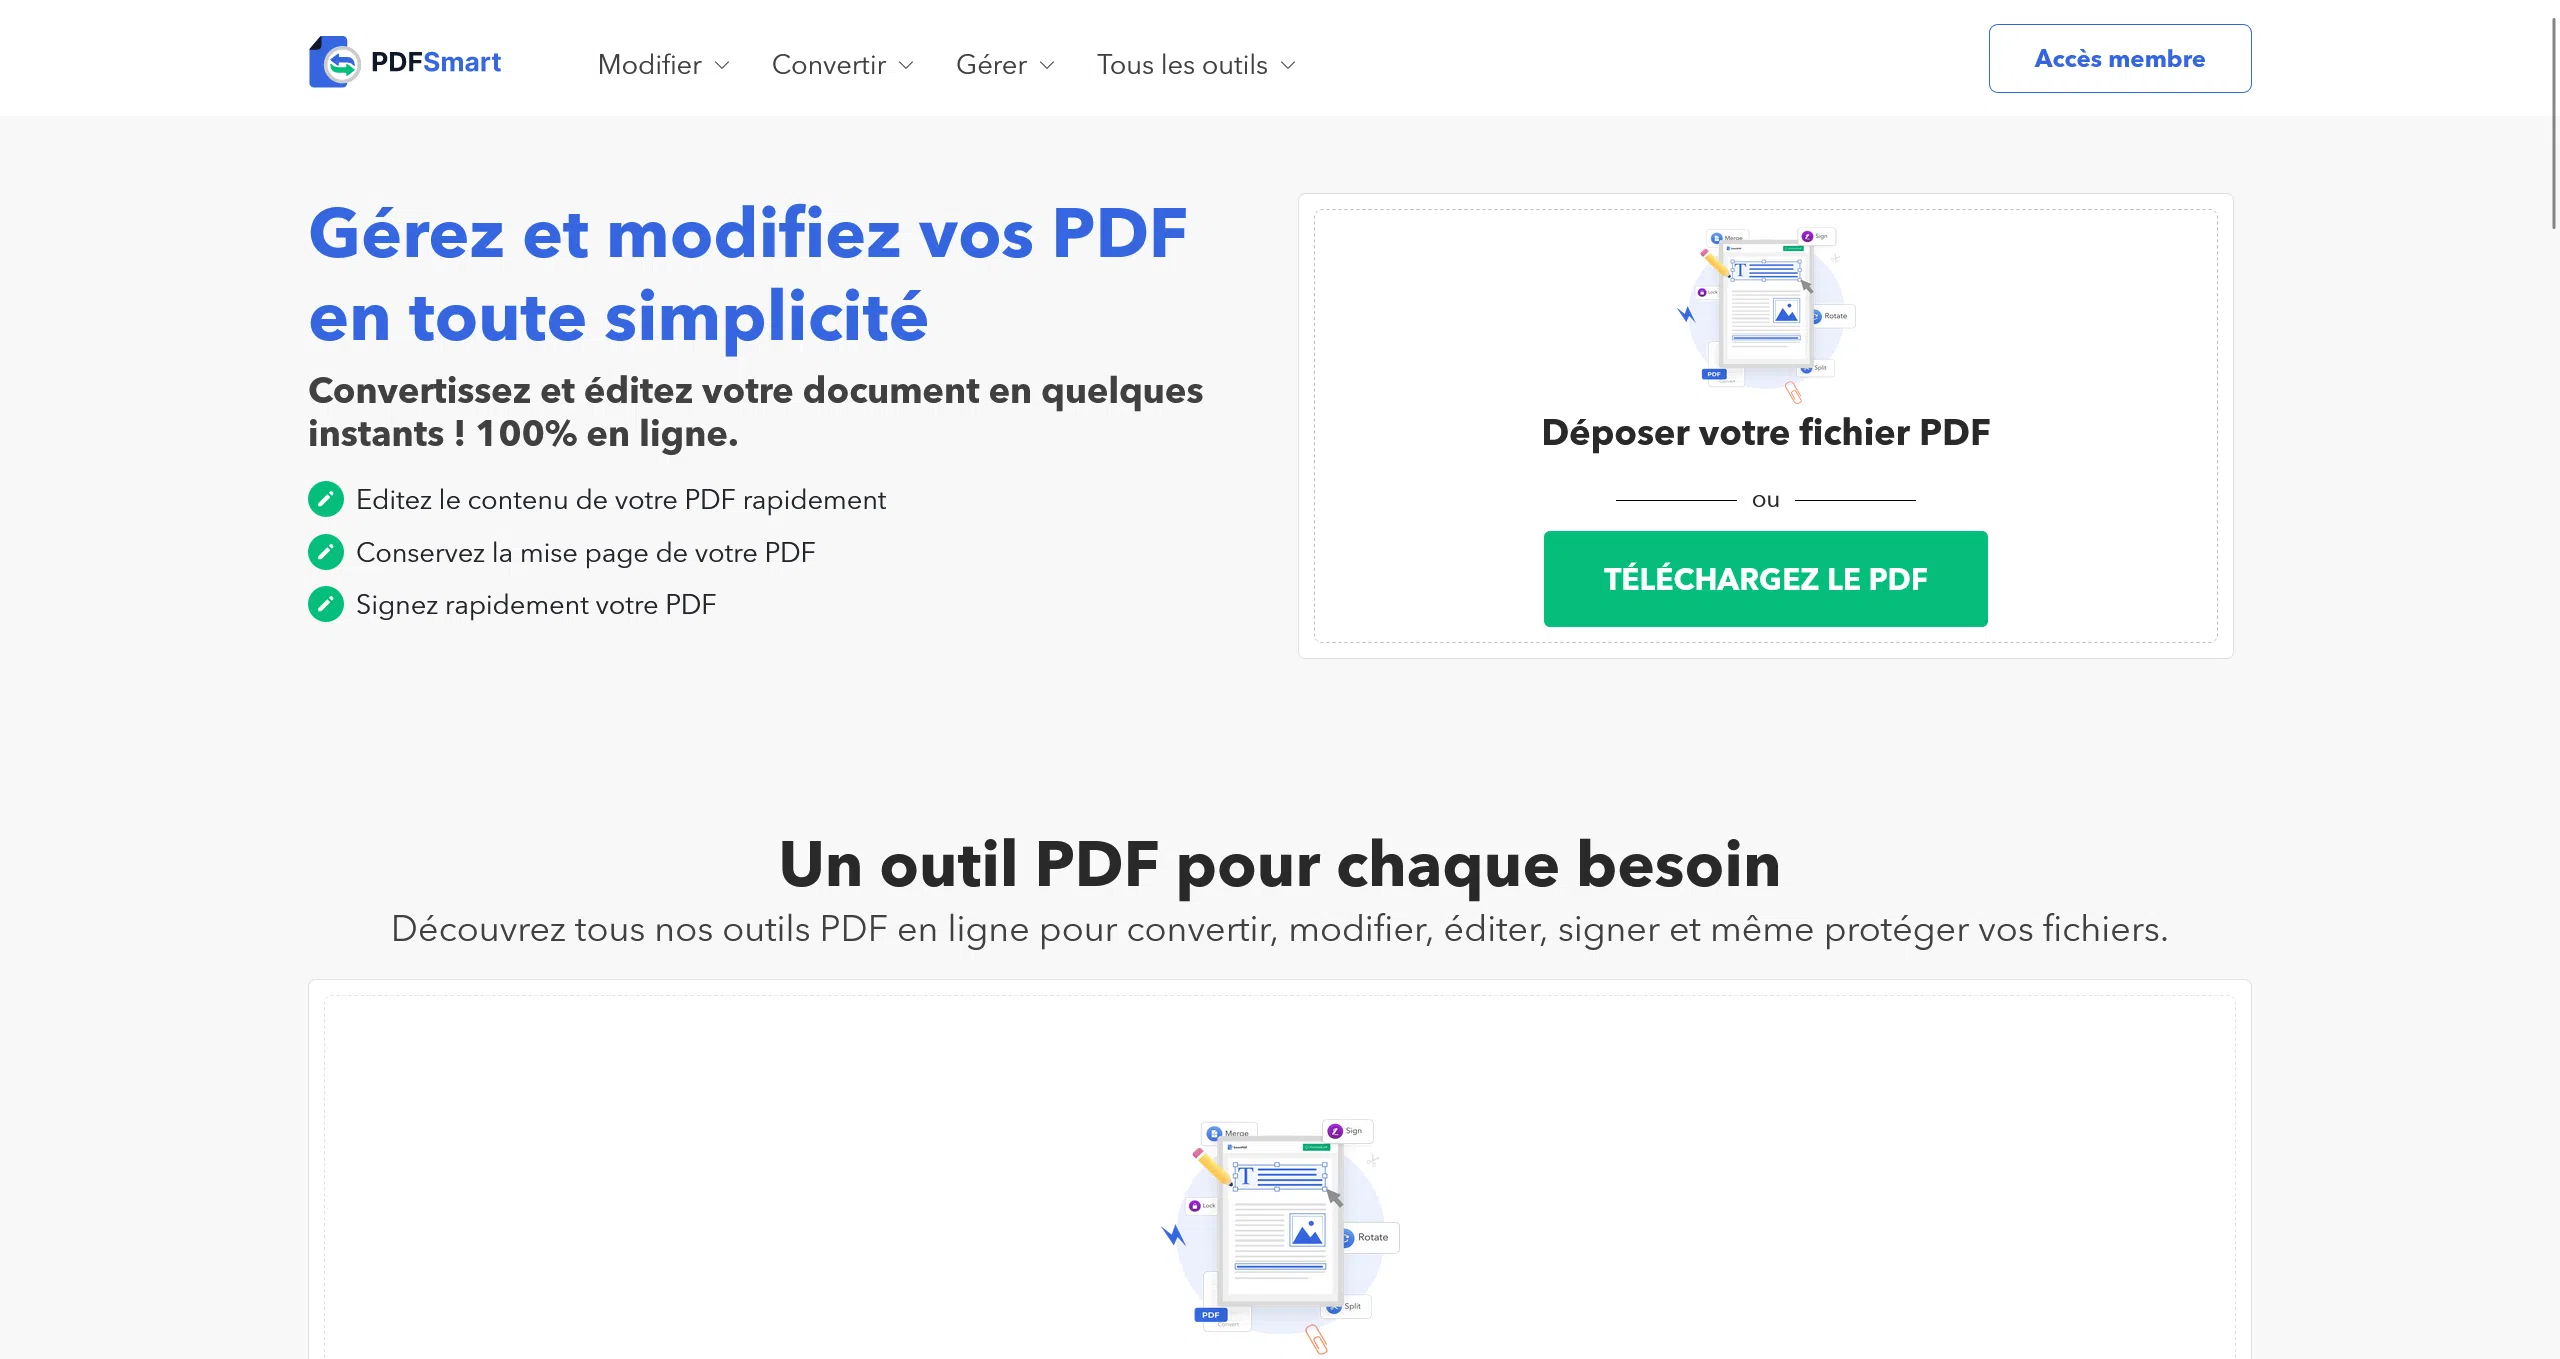 Pdfsmart : L’outil qui révolutionne l’édition de PDF